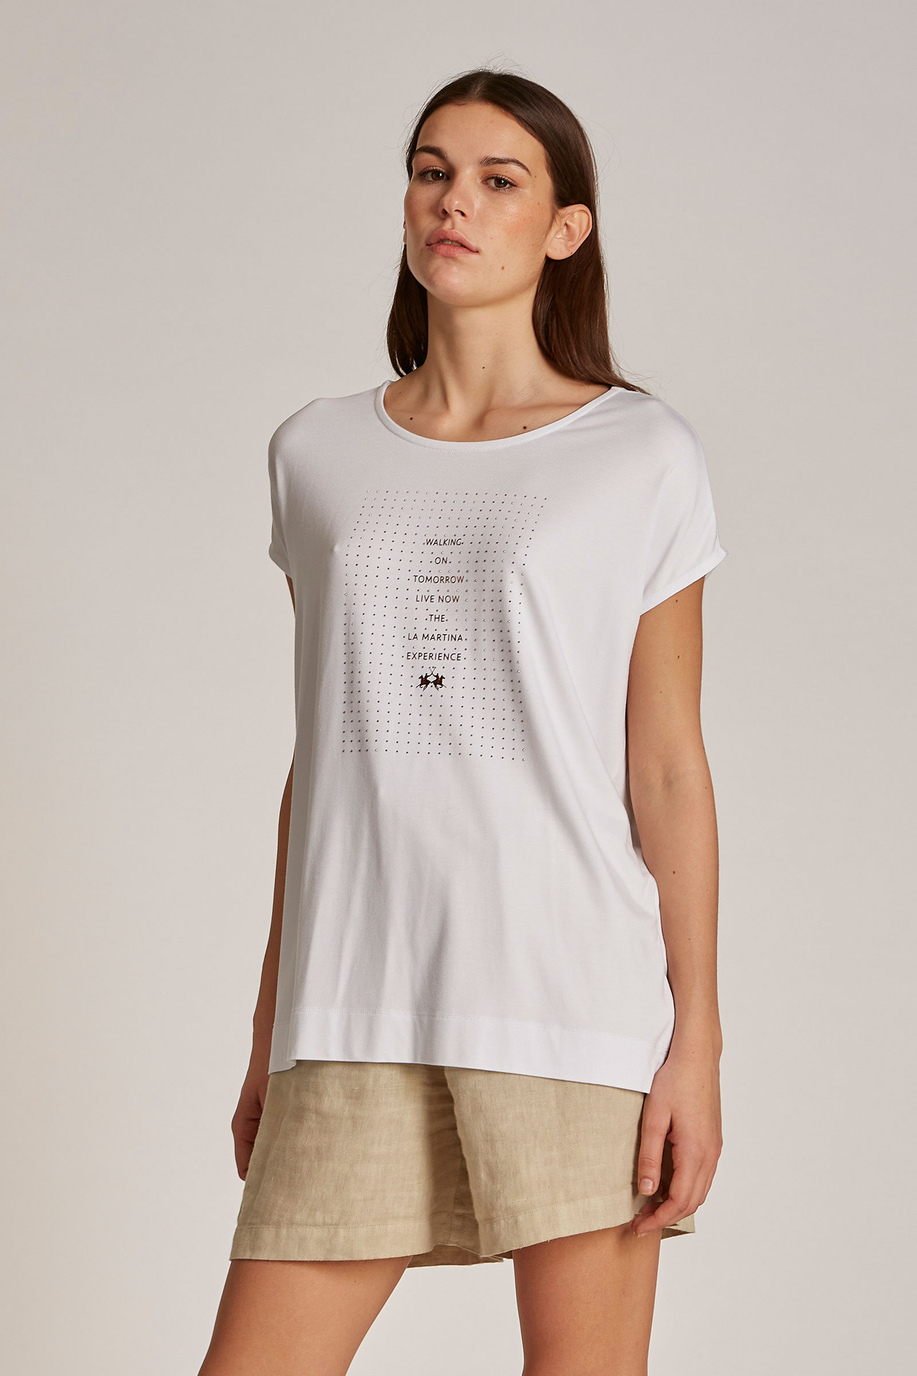 Camiseta de mujer de viscosa con logotipo, corte regular | La Martina - Official Online Shop